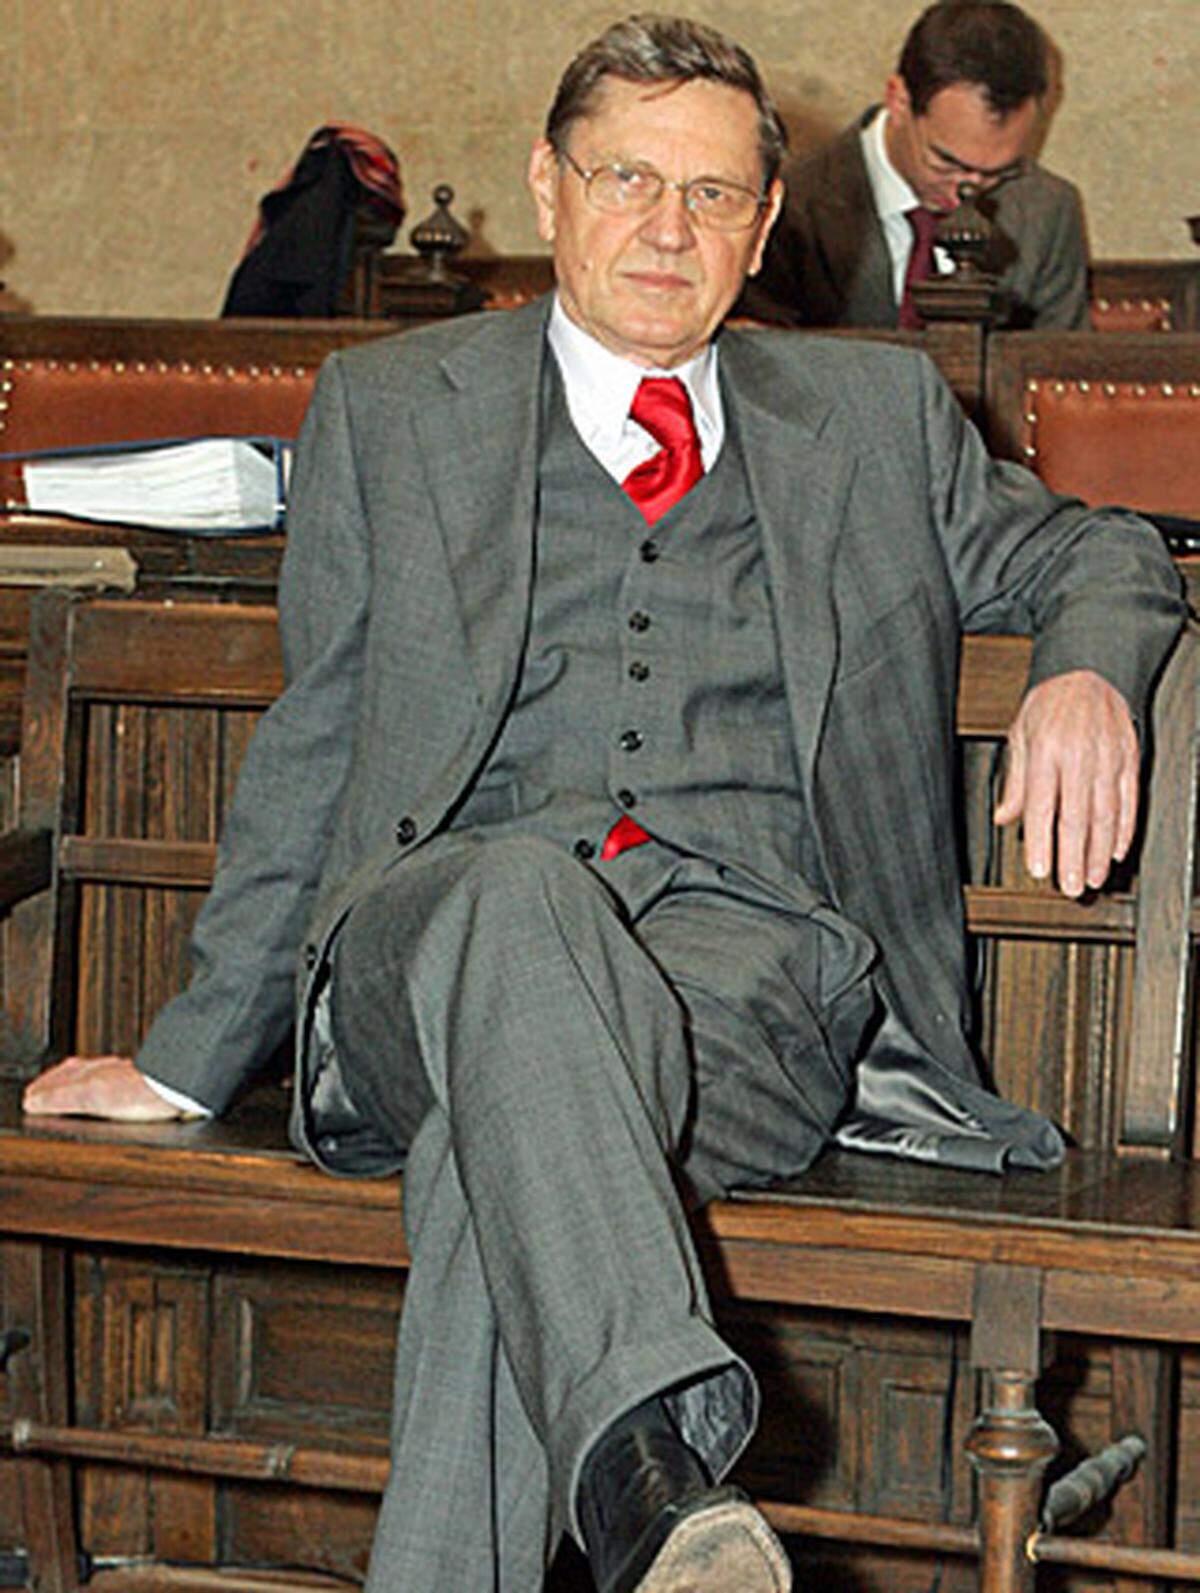 2008 verurteilte ein Schöffensenat den früheren ÖGB-Finanzchef Günter Weninger (SPÖ) wegen Beihilfe zur Untreue in der BAWAG-Affäre zu (nicht rechtskräftigen) zweieinhalb Jahren teilbedingter Haft.